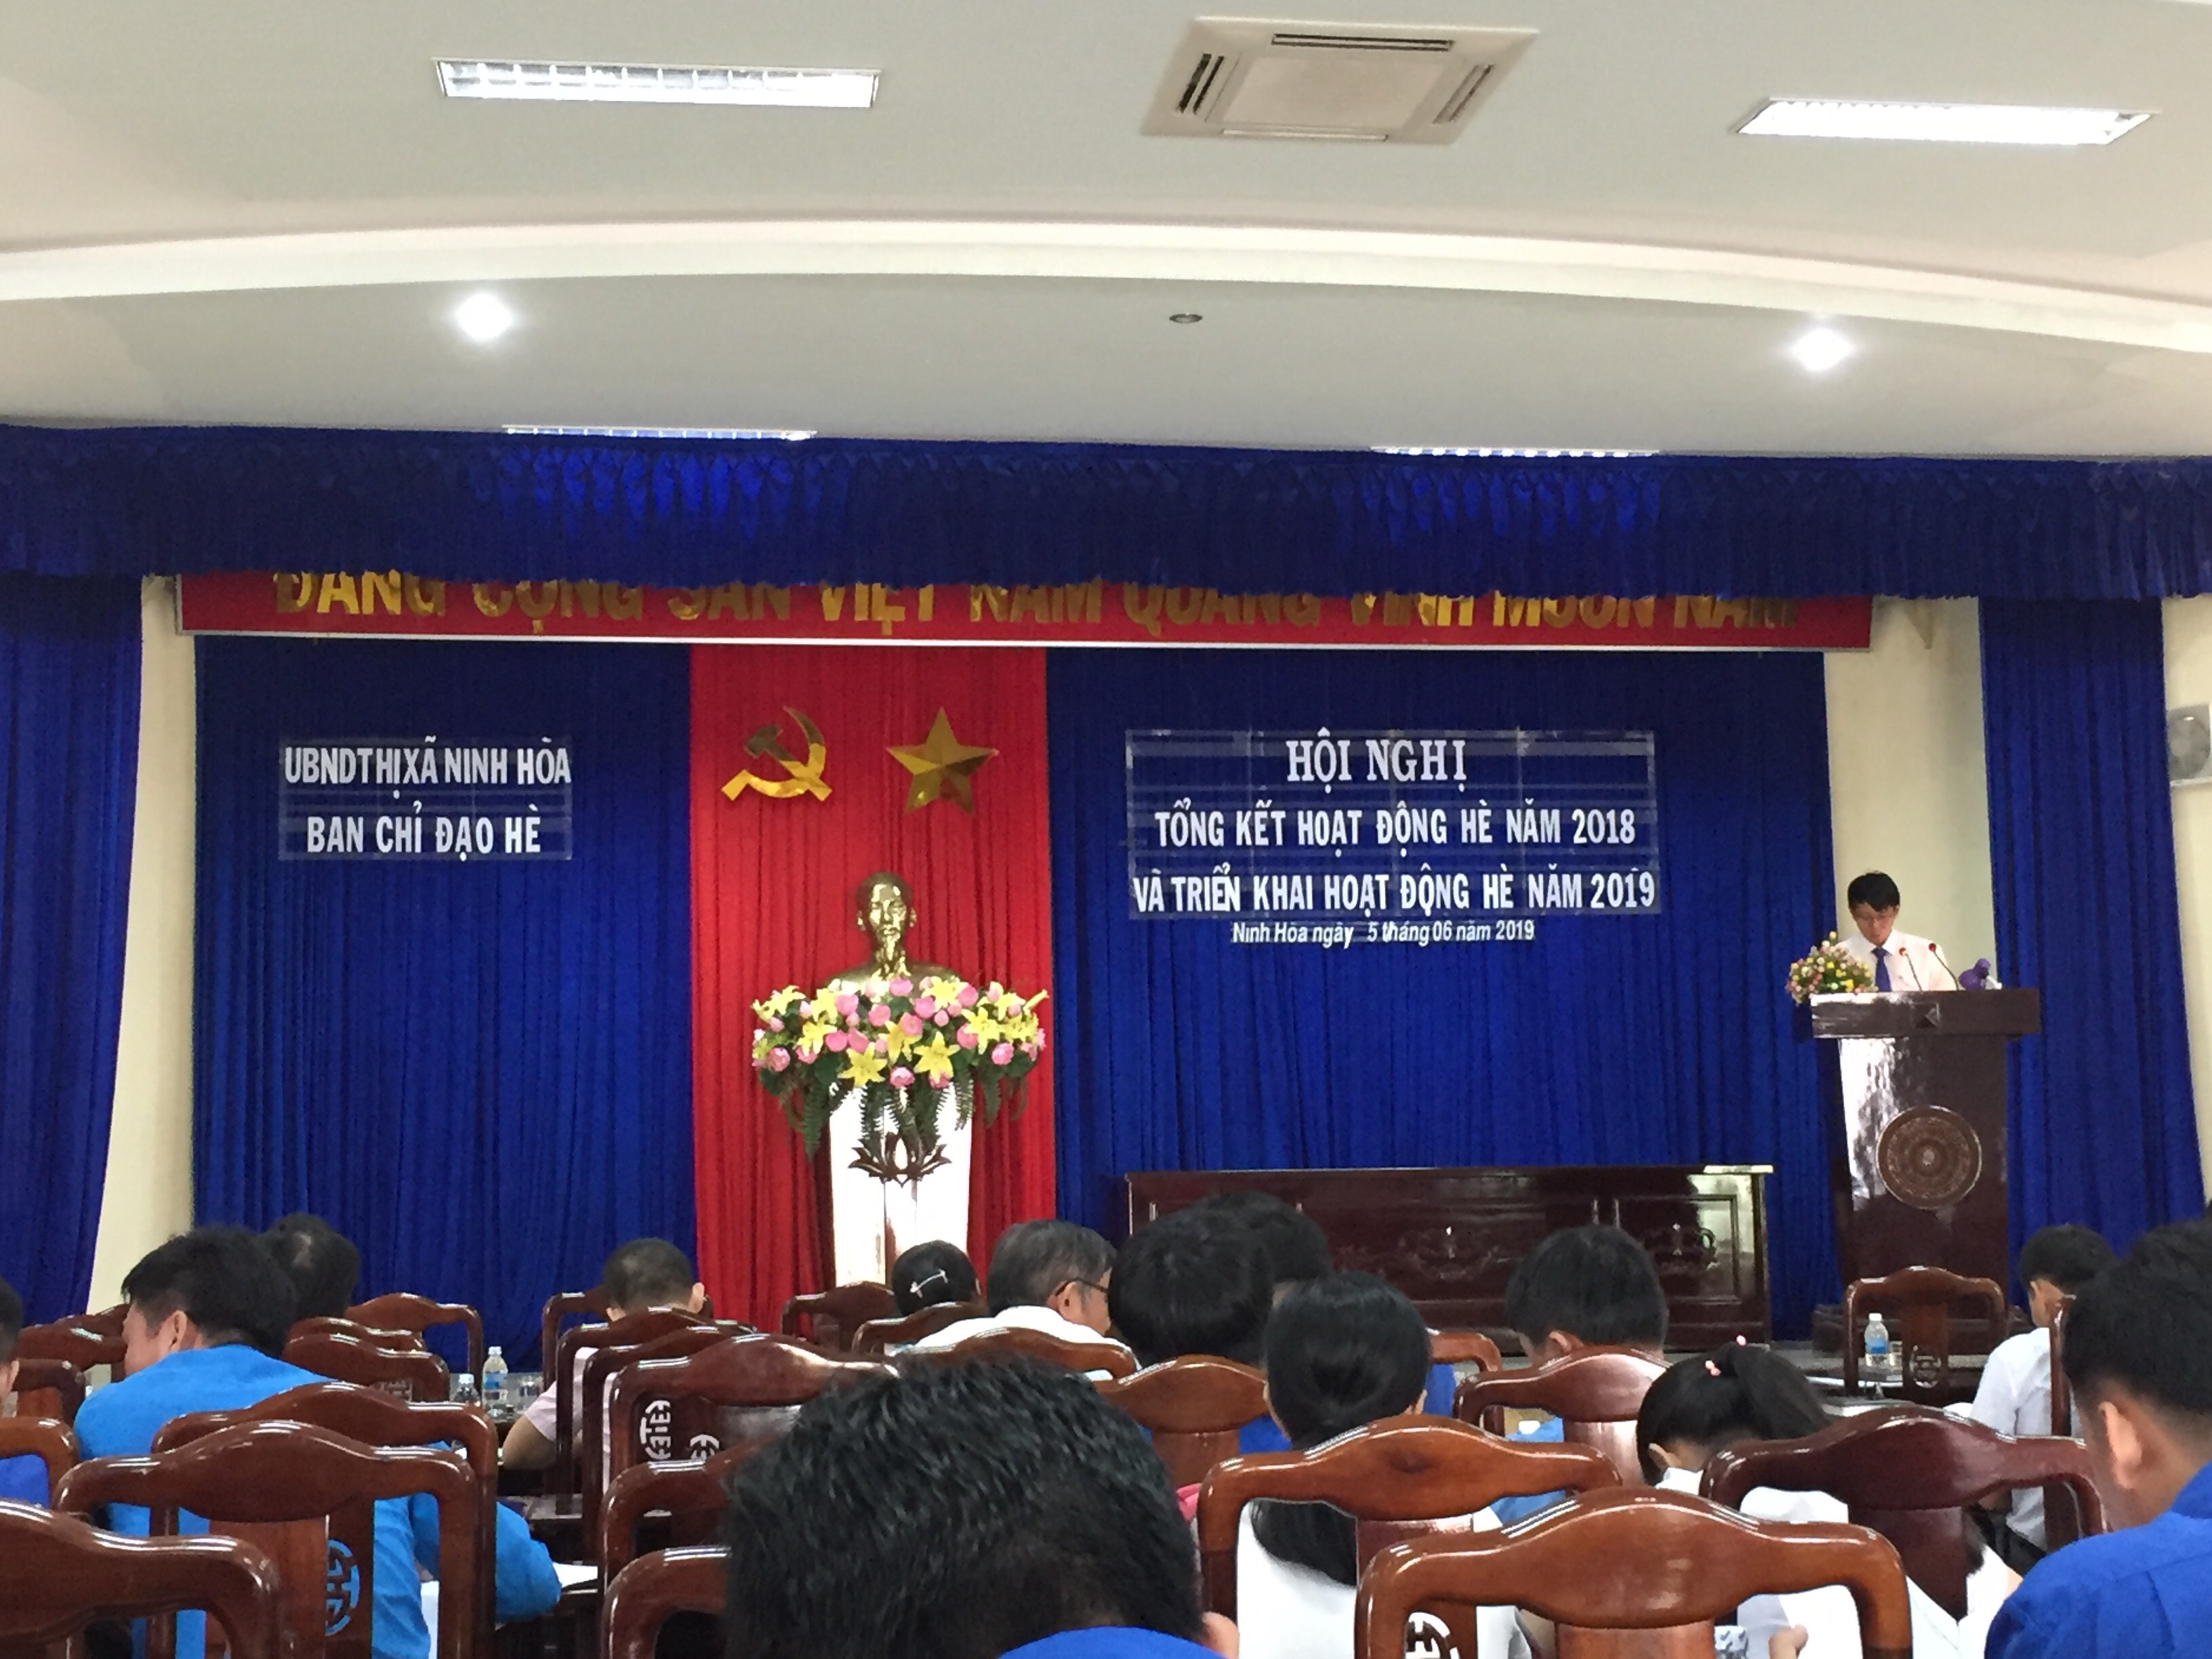 Đồng chí Nguyễn Thanh Hà, Phó chủ tịch UBND, Trưởng ban chỉ đạo hè thị xã phát biểu